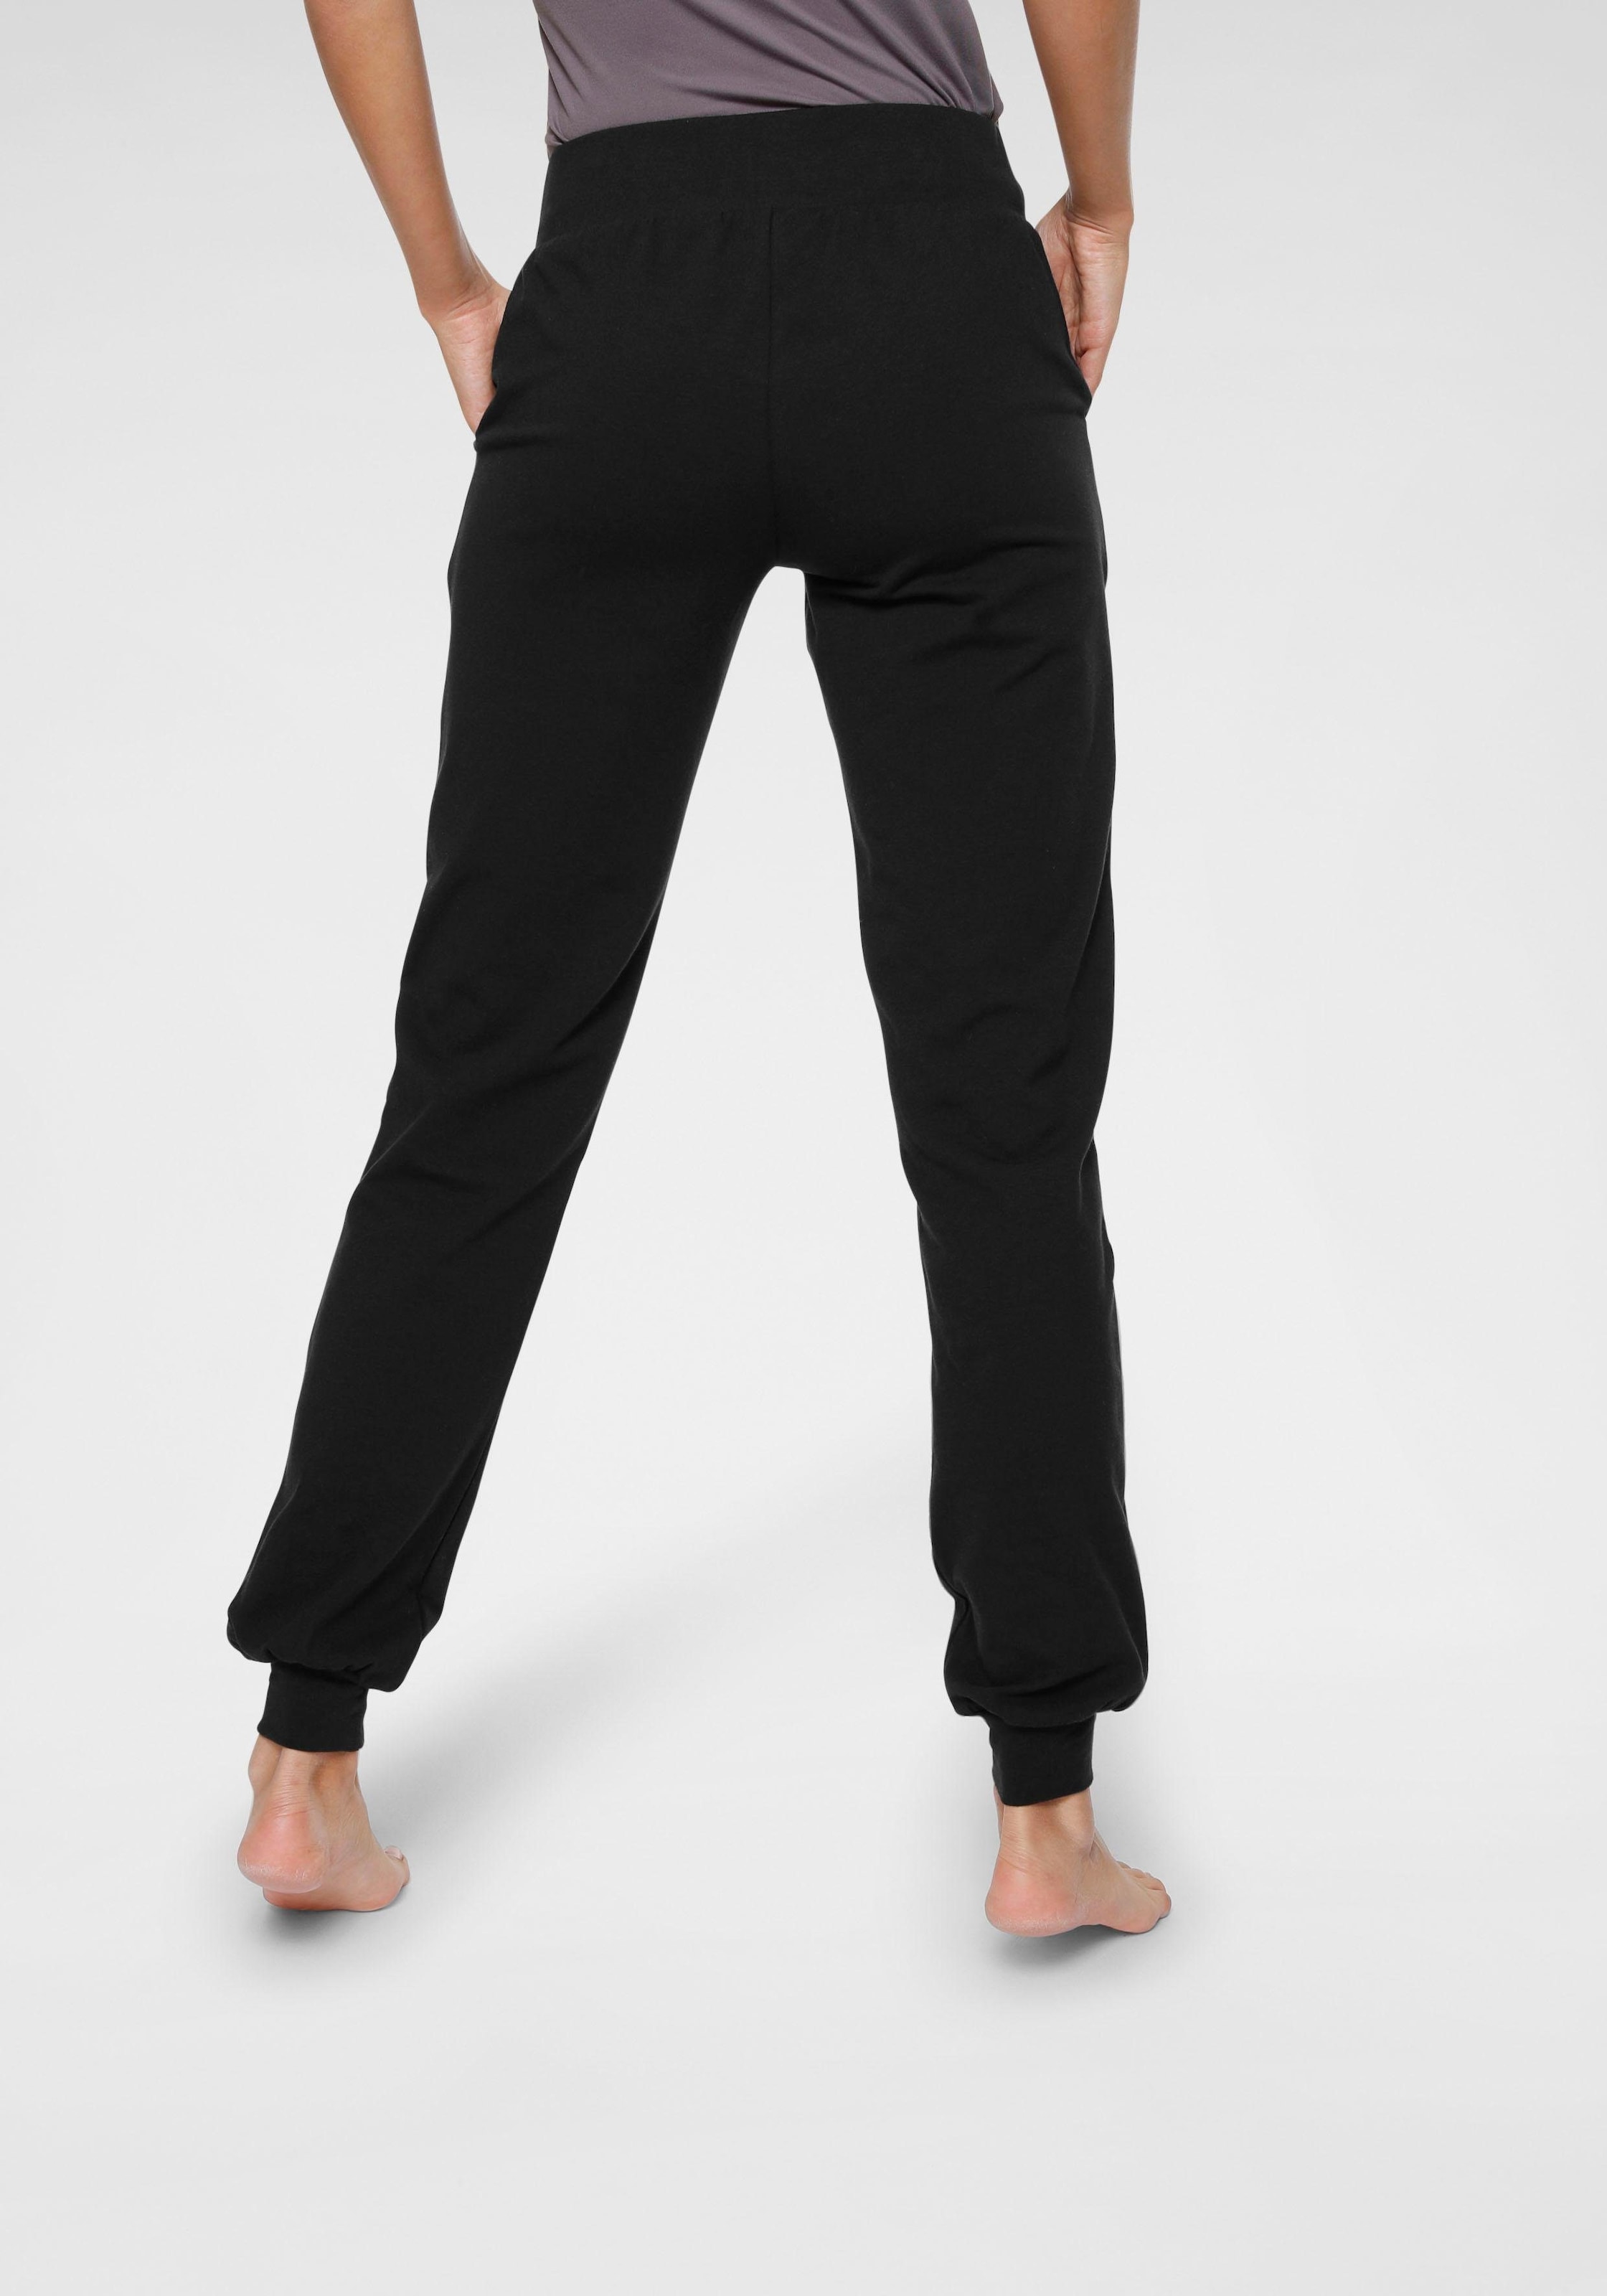 Ocean Sportswear Yogahose »Soulwear Fit« - Loose kaufen Yoga & Relax online - Pants